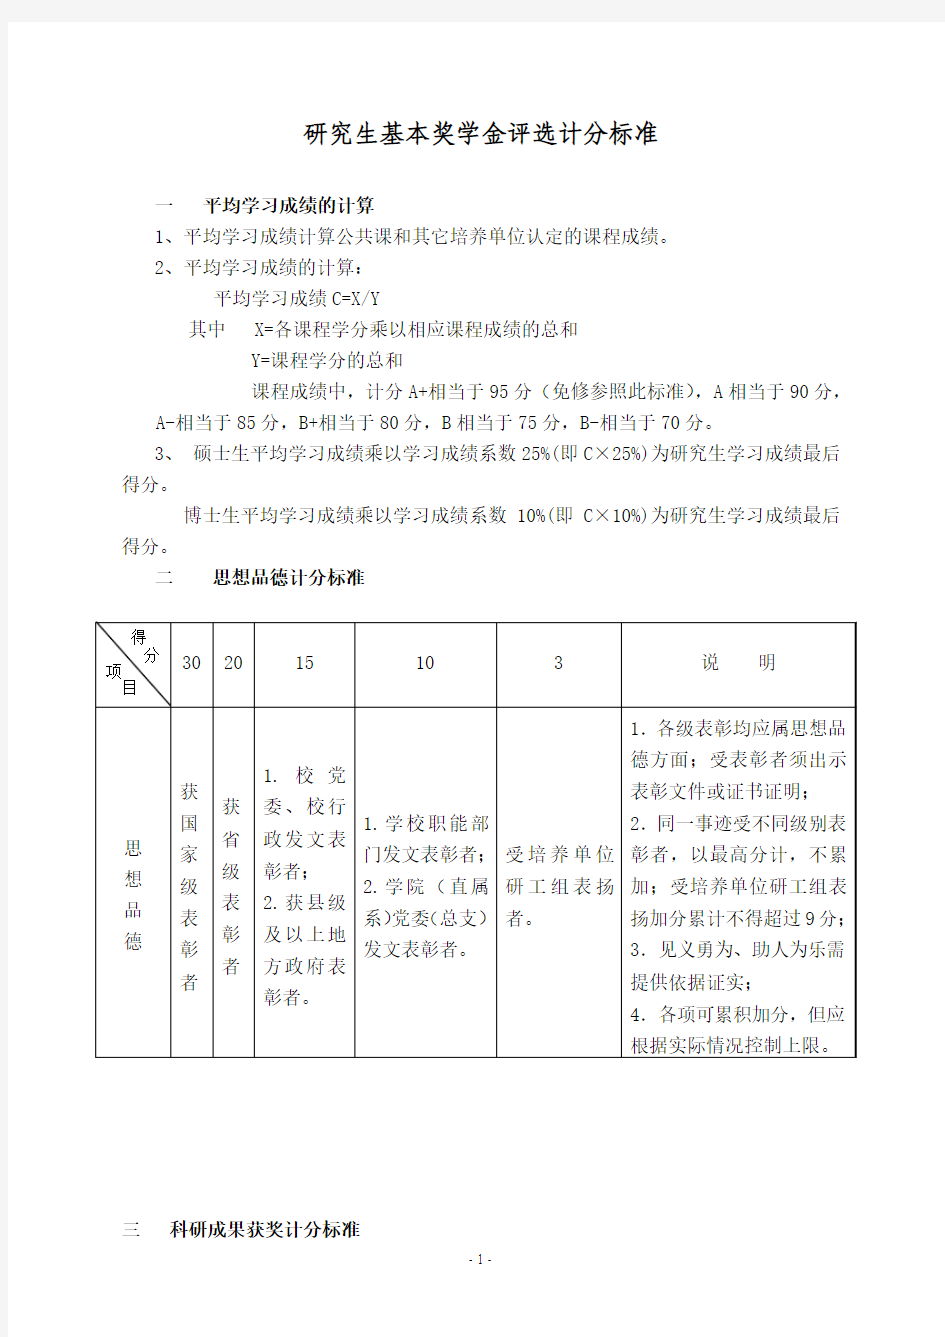 武汉大学基本奖学金评选计分标准